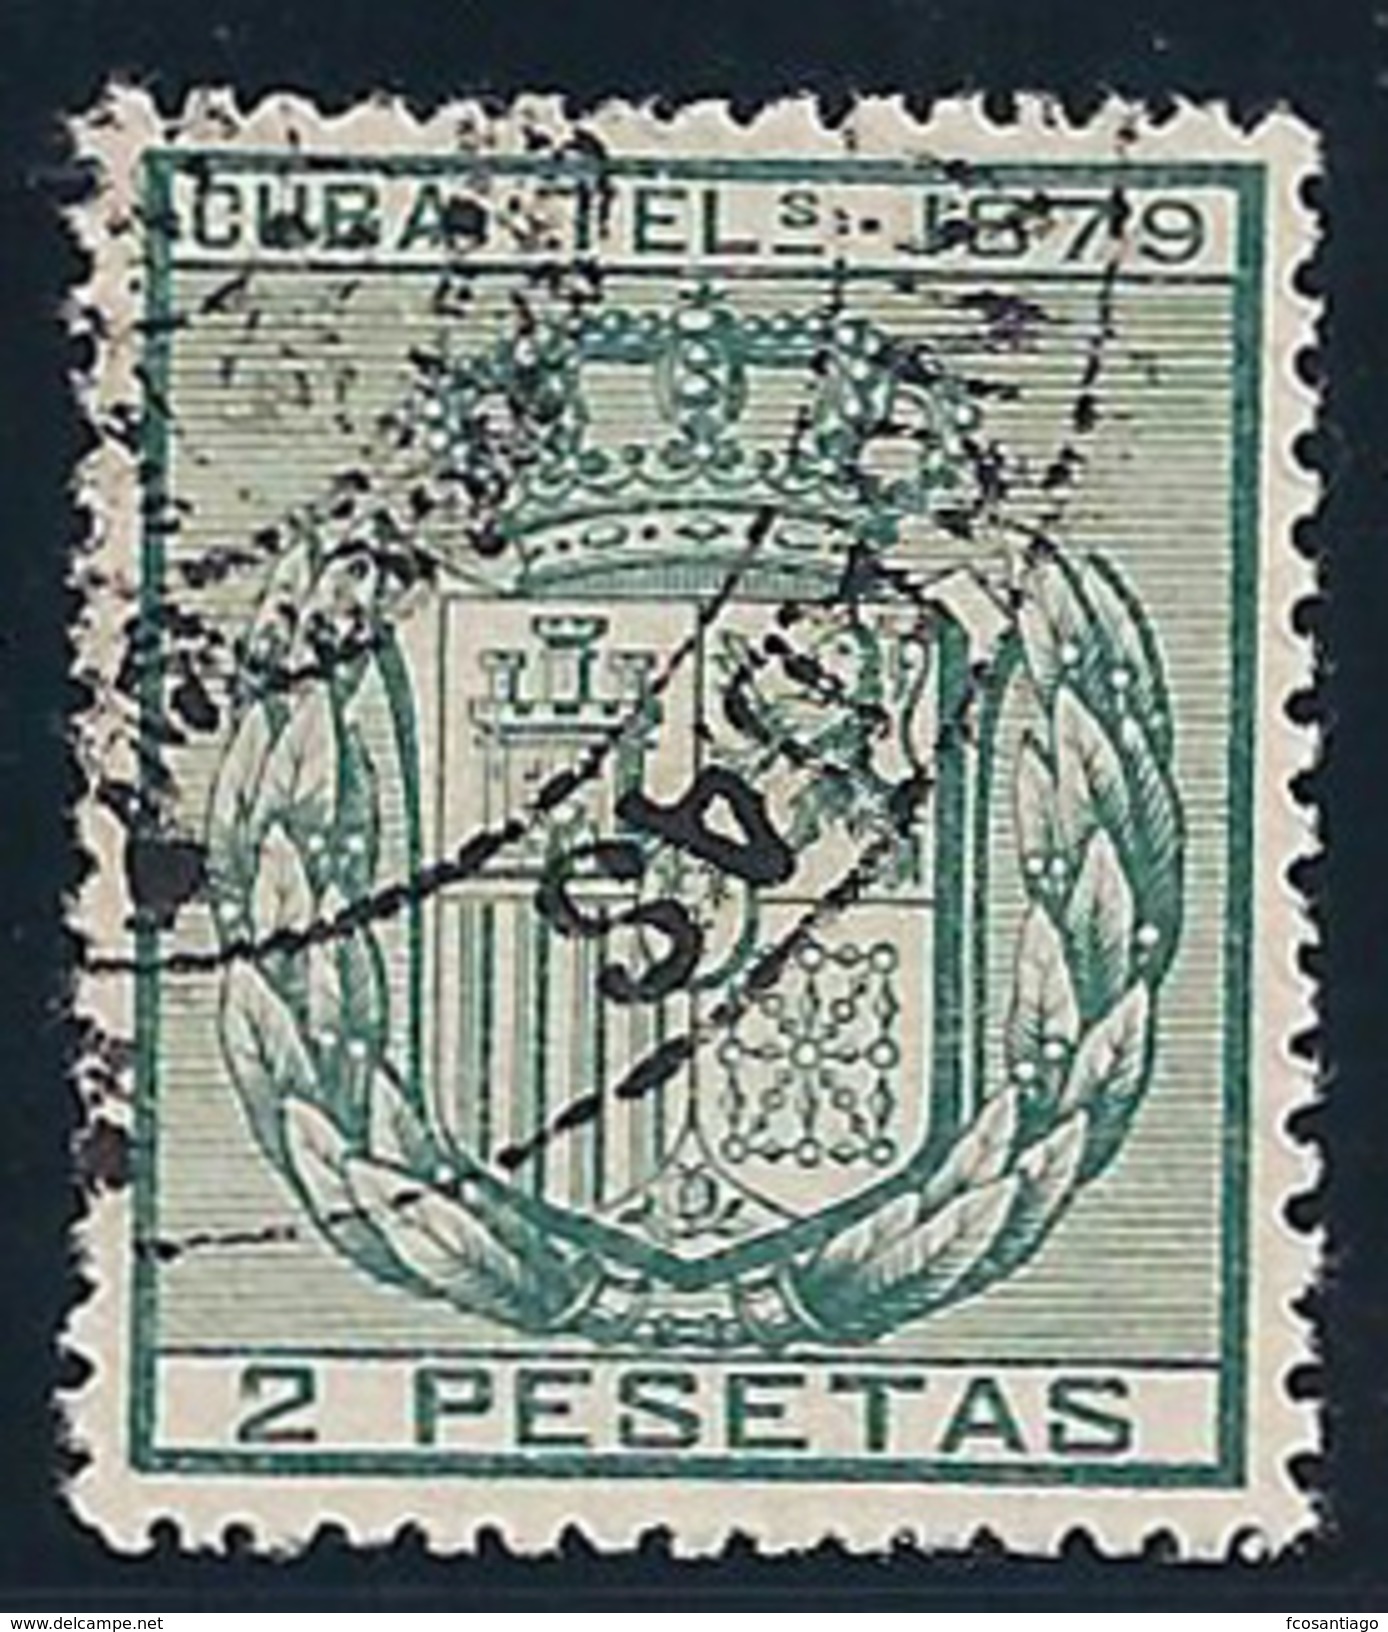 ESPAÑA/CUBA 1879 - Edifil #NE1 - VFU - Cuba (1874-1898)